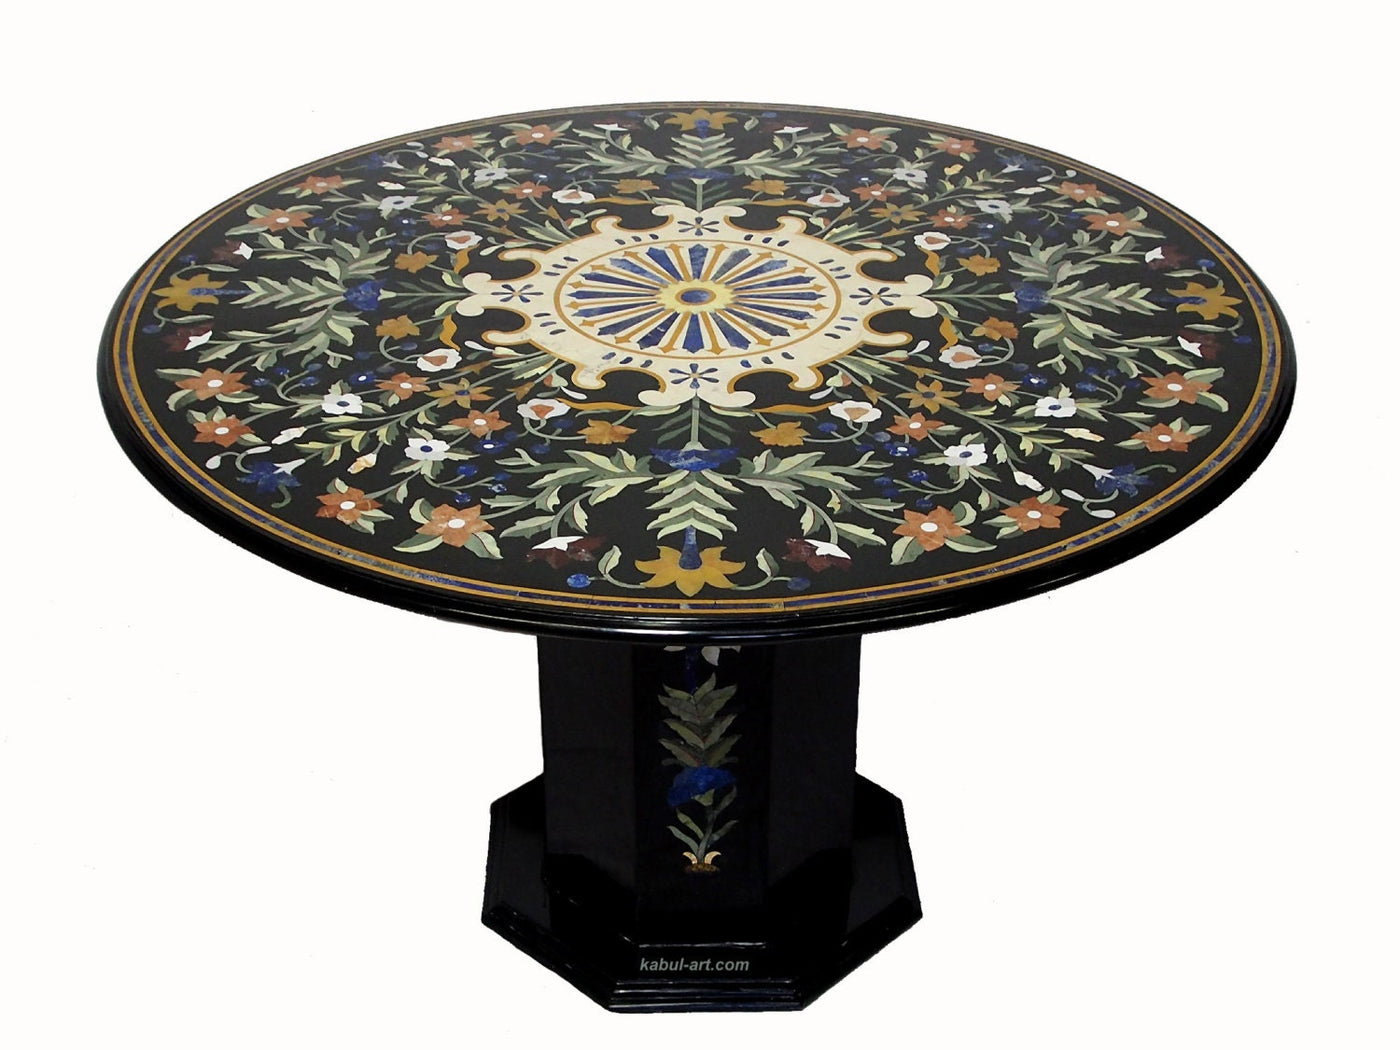 122 cm schwarz Marmor Pietra Dura Couchtisch Tisch Florentiner Mosaik Intarsienarbeit Esstisch (Schwarz)  Orientsbazar   